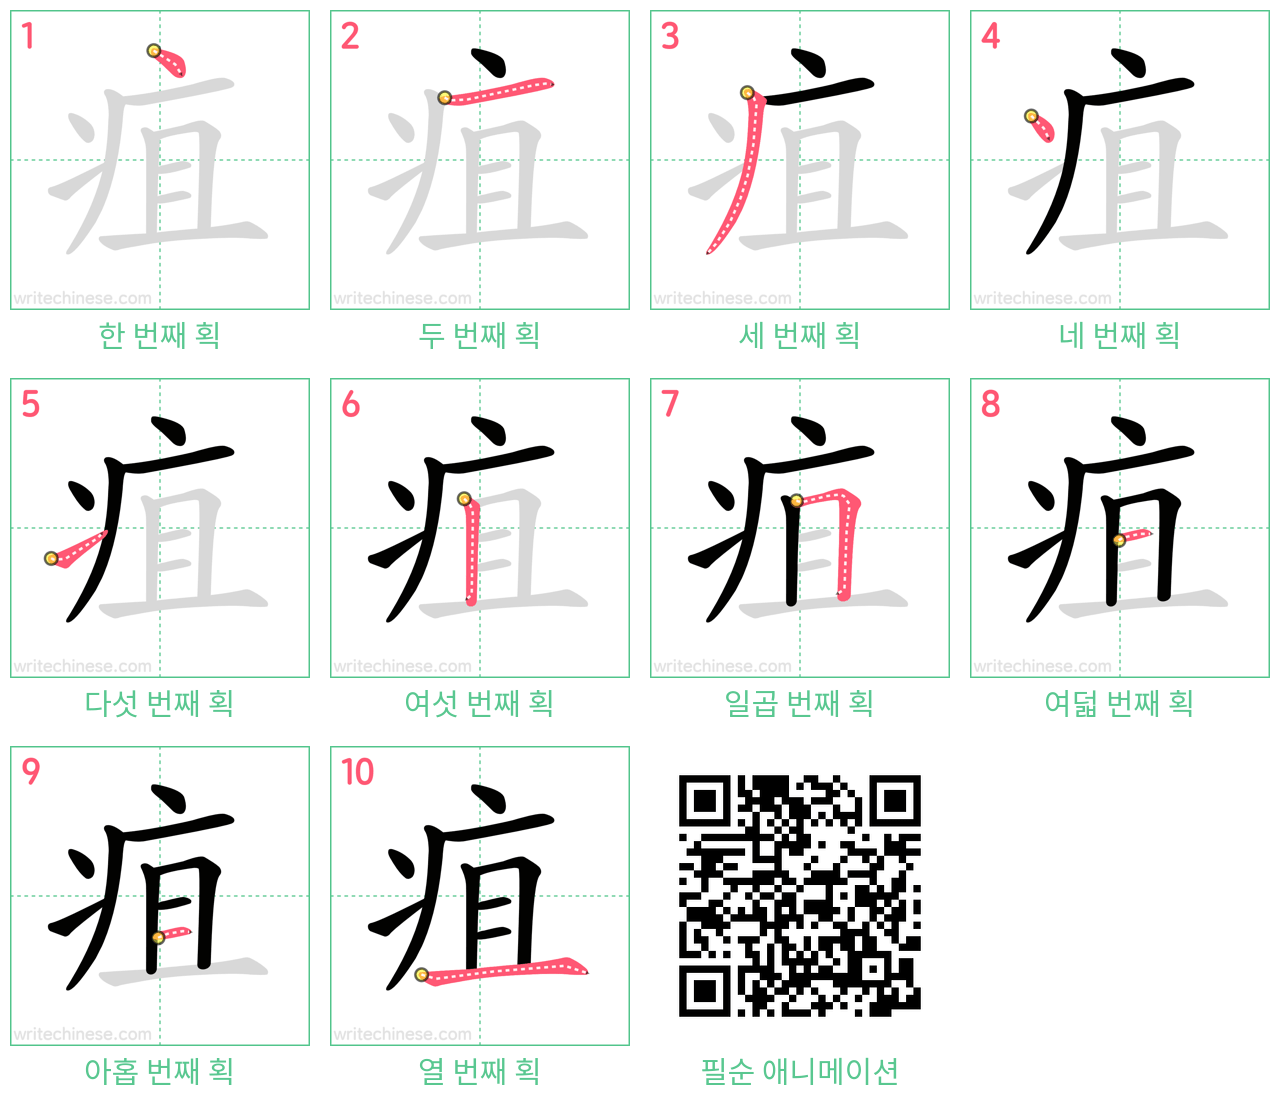 疽 step-by-step stroke order diagrams